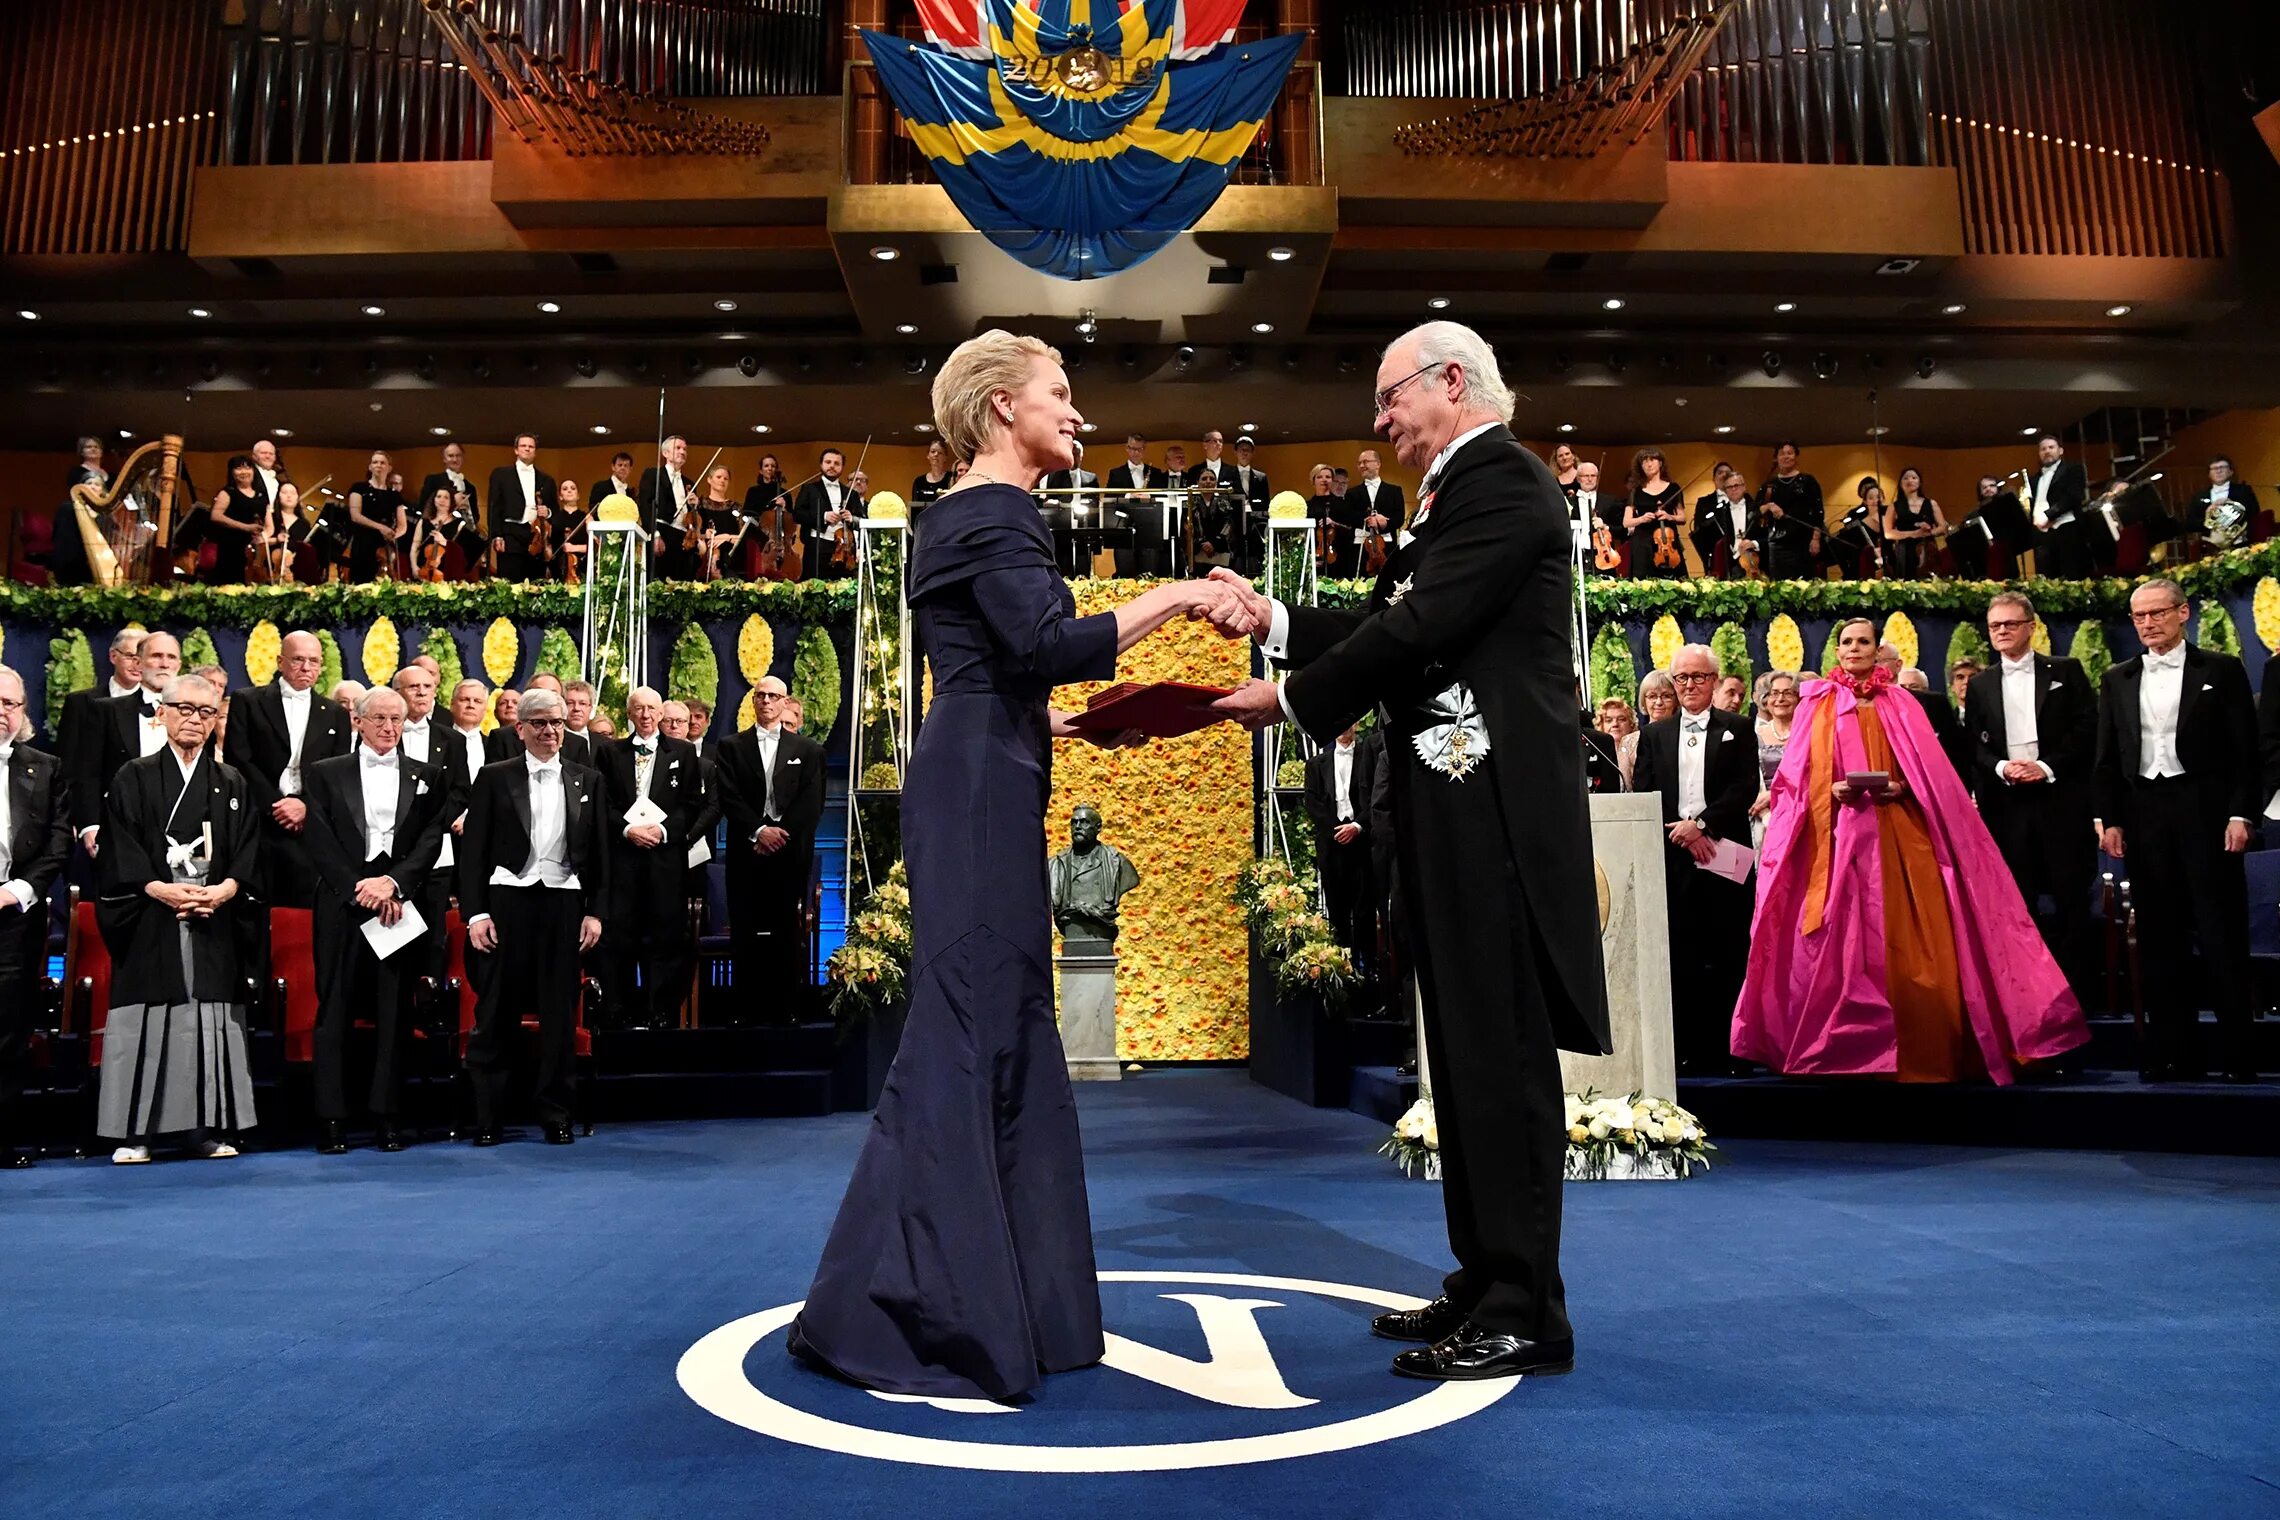 Нобелевская премия в Стокгольме. Церемония вручения Нобелевской премии в Стокгольме. Шведский Король Нобелевская премия. Церемония награждения лучших